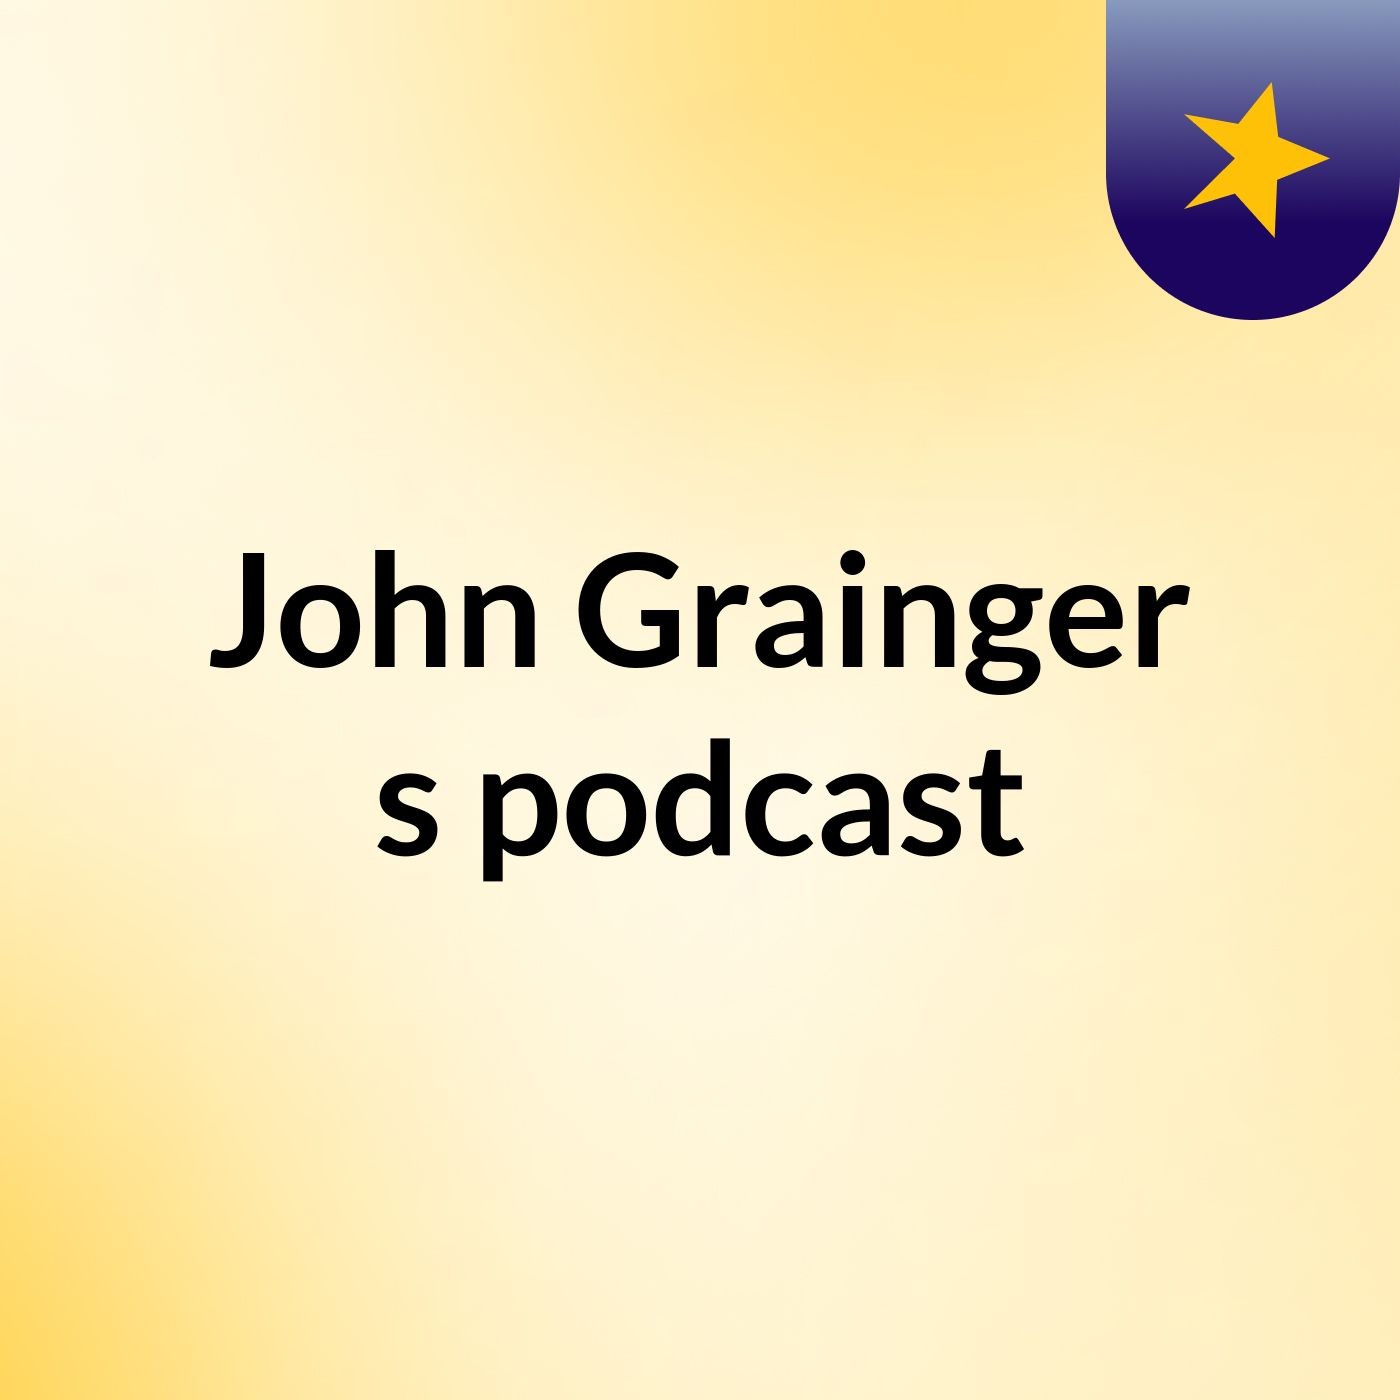 John Grainger's podcast